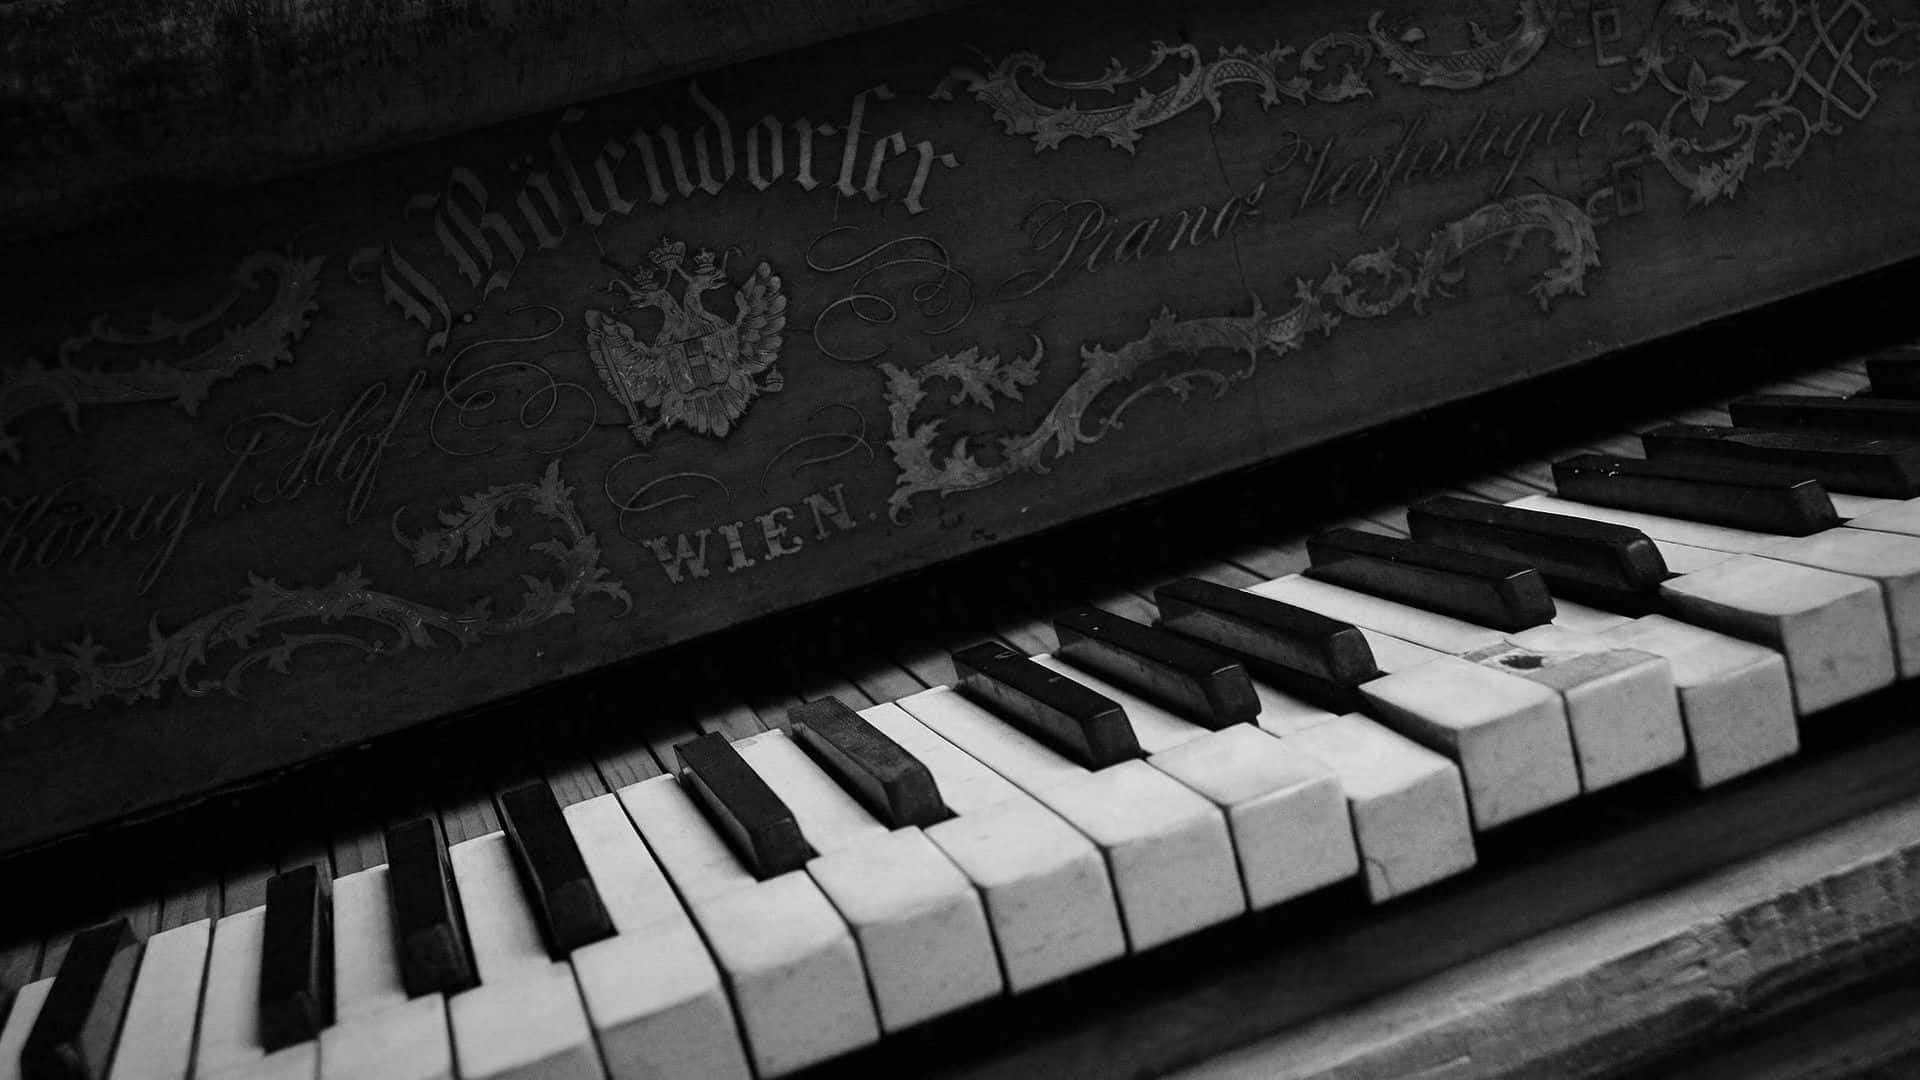 Aprendea Tocar El Piano Y Hacer Música